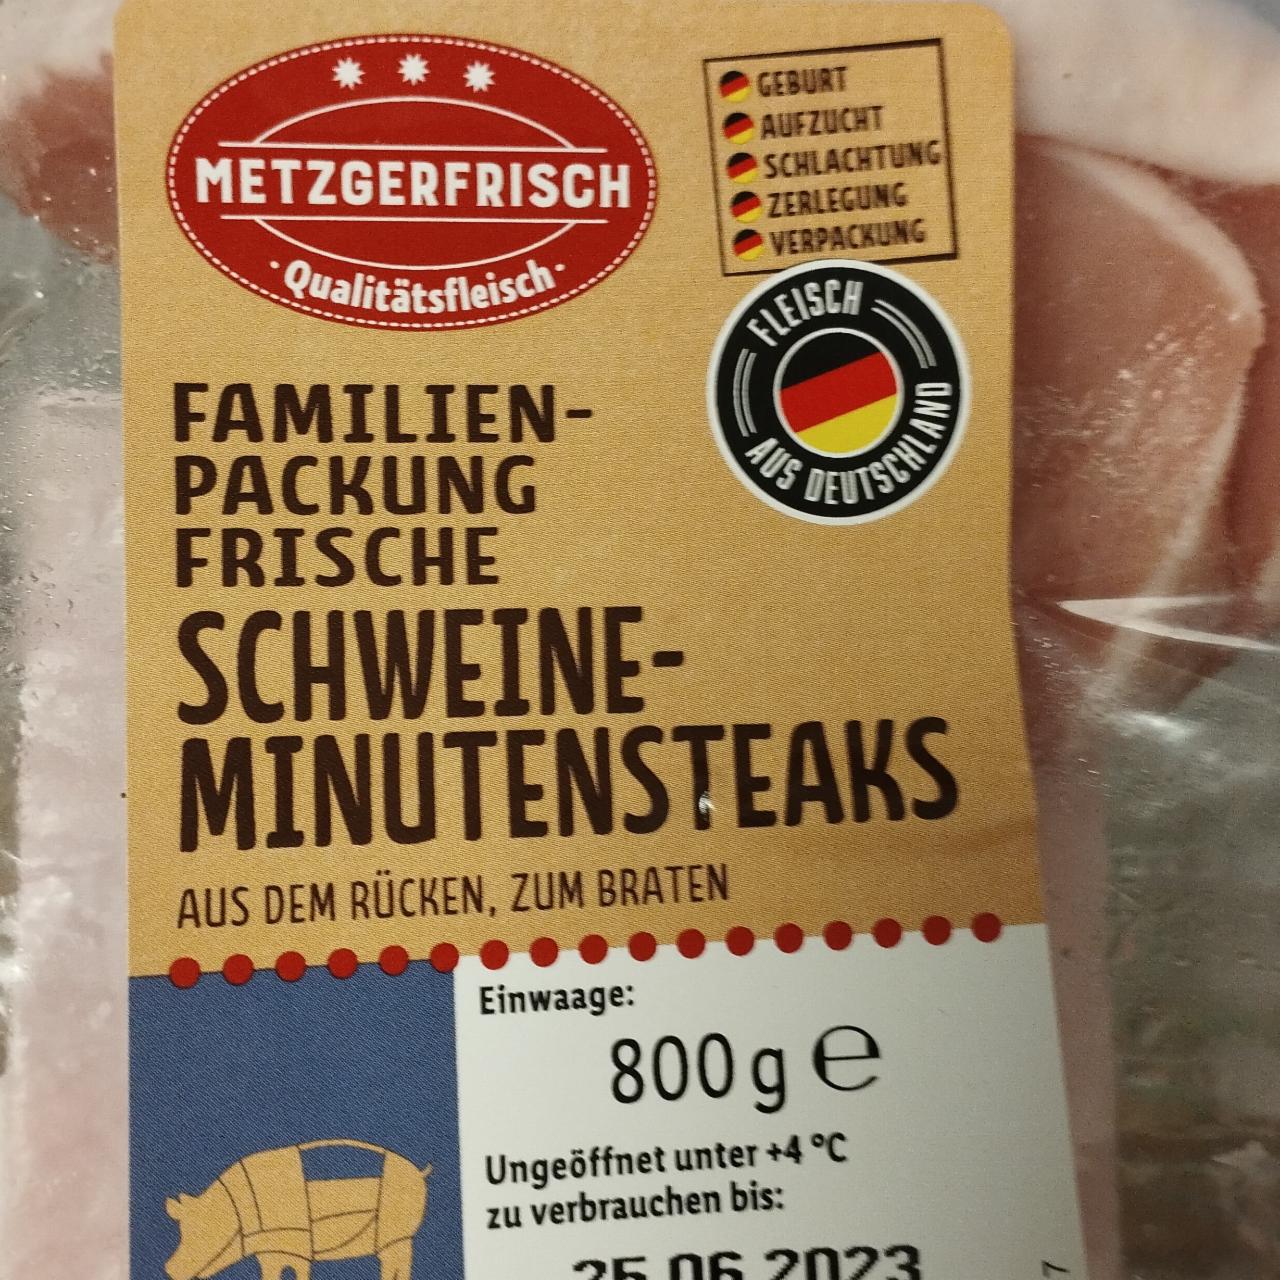 Familien-packung frische schweine minutensteaks Metzgerfrisch ⋙TablycjaKalorijnosti - цінність калорійність, харчова